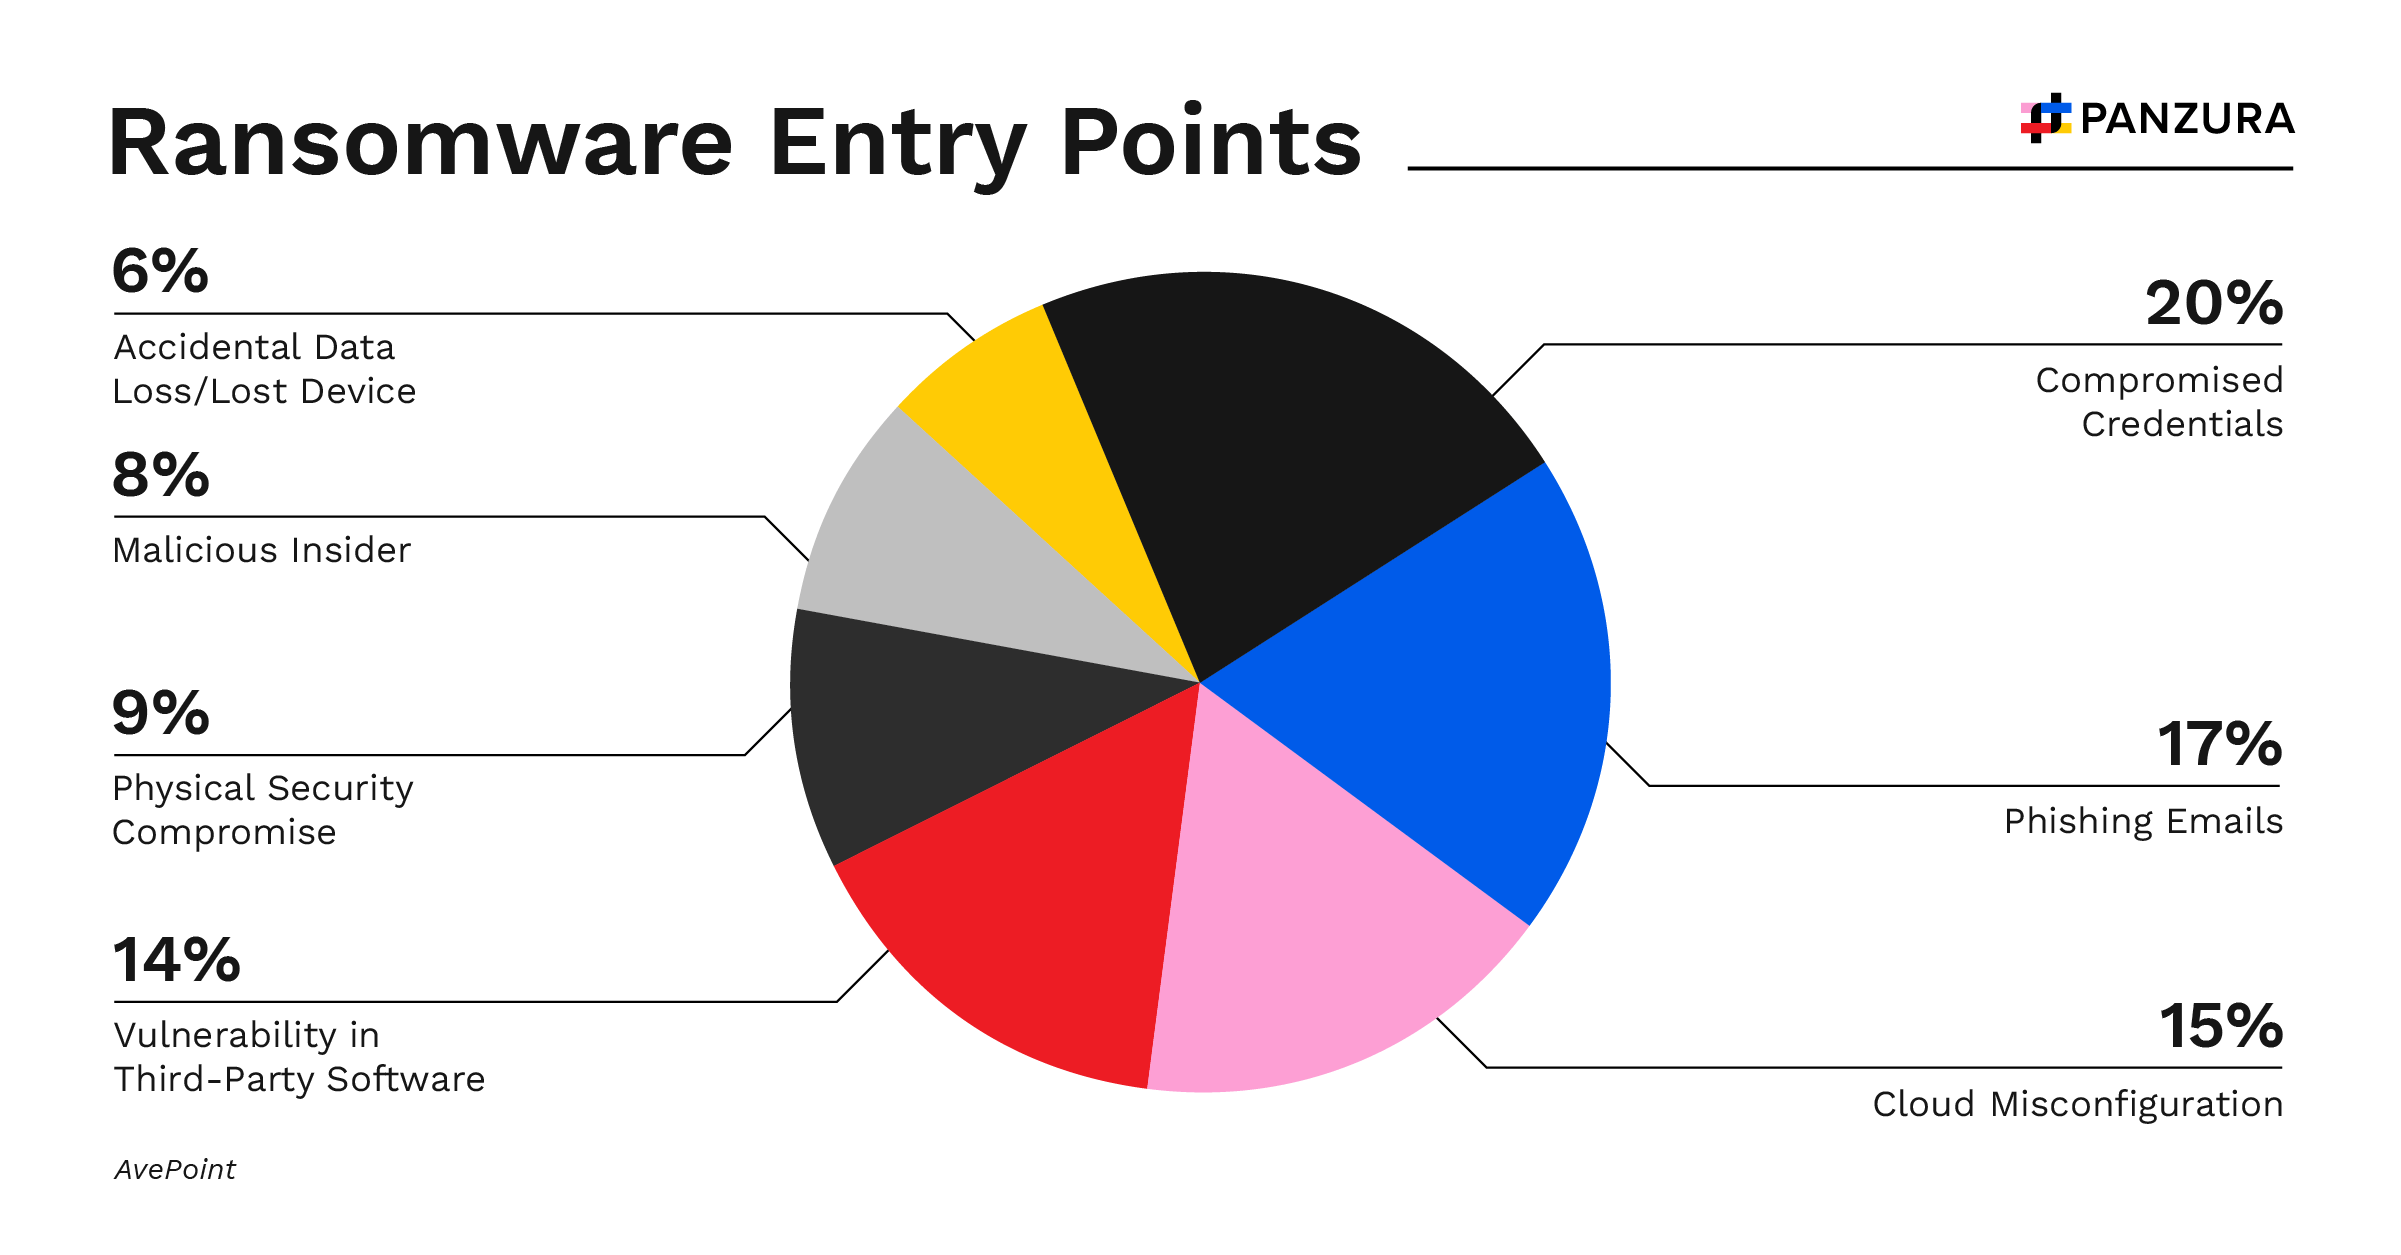 Infografía sobre ransomware: gráfico circular que muestra los puntos de entrada del ransomware